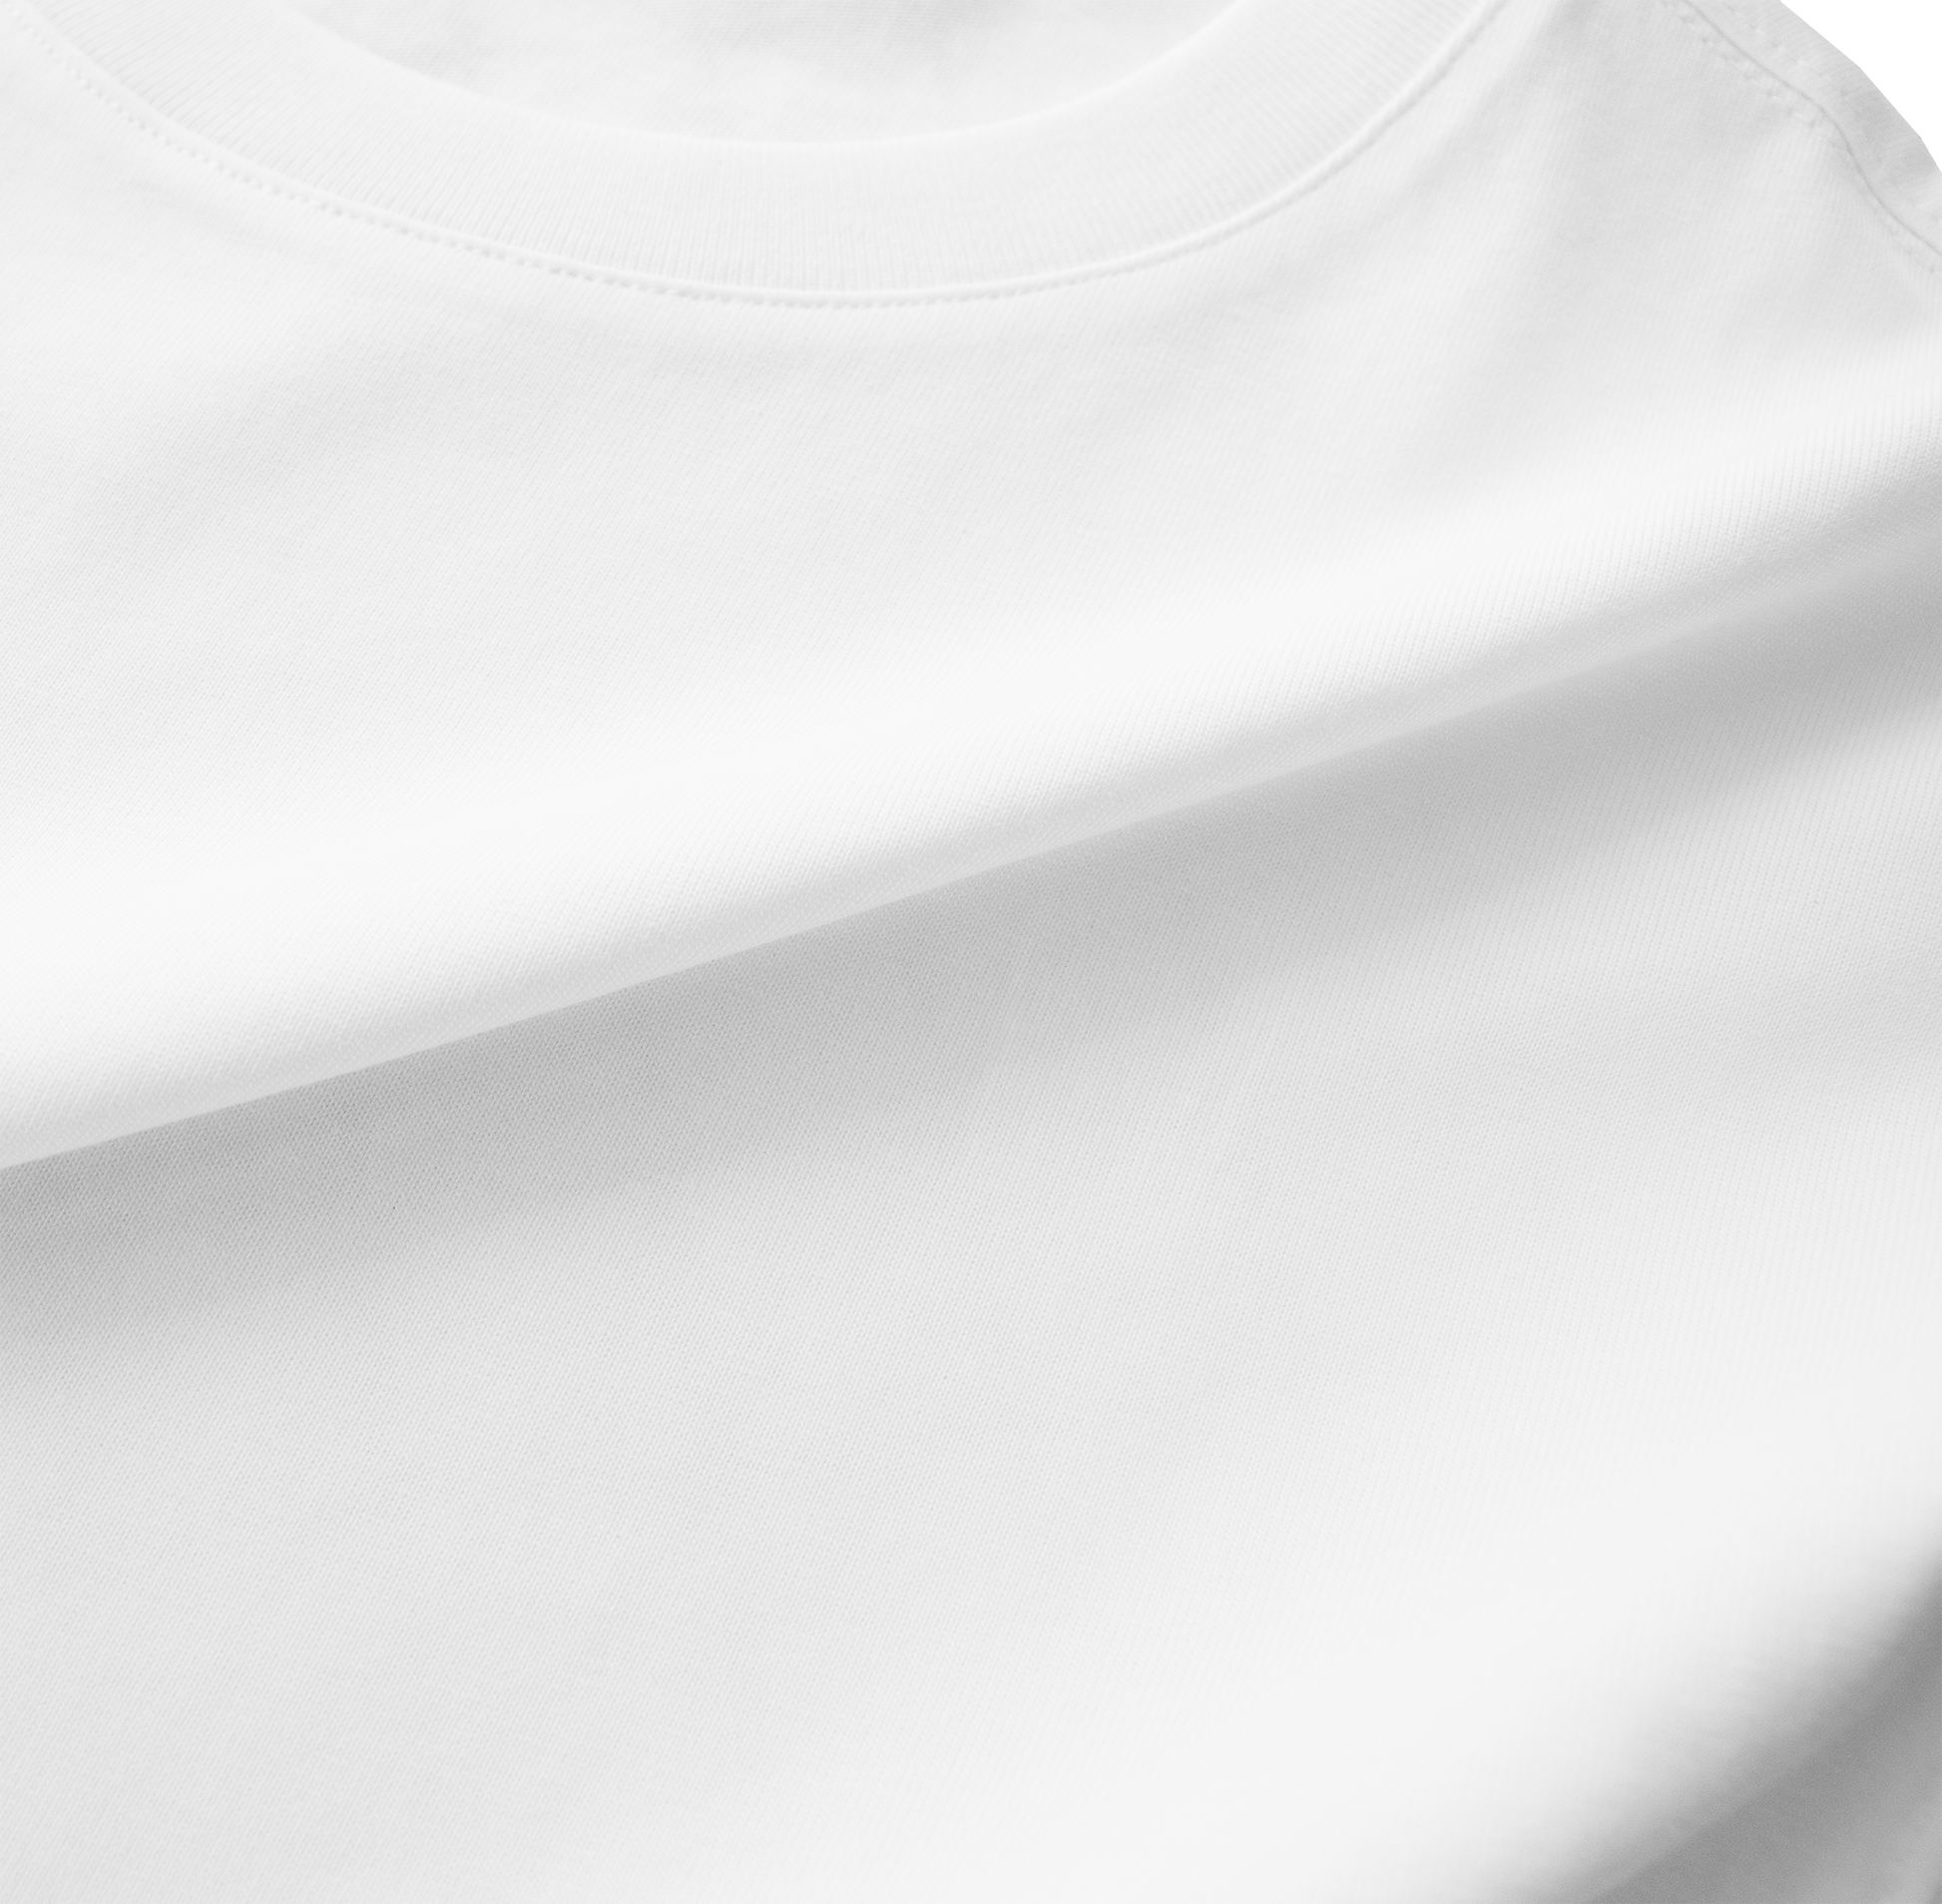 White T-shirt, high quality tshirt, white shirt, top, tshirt